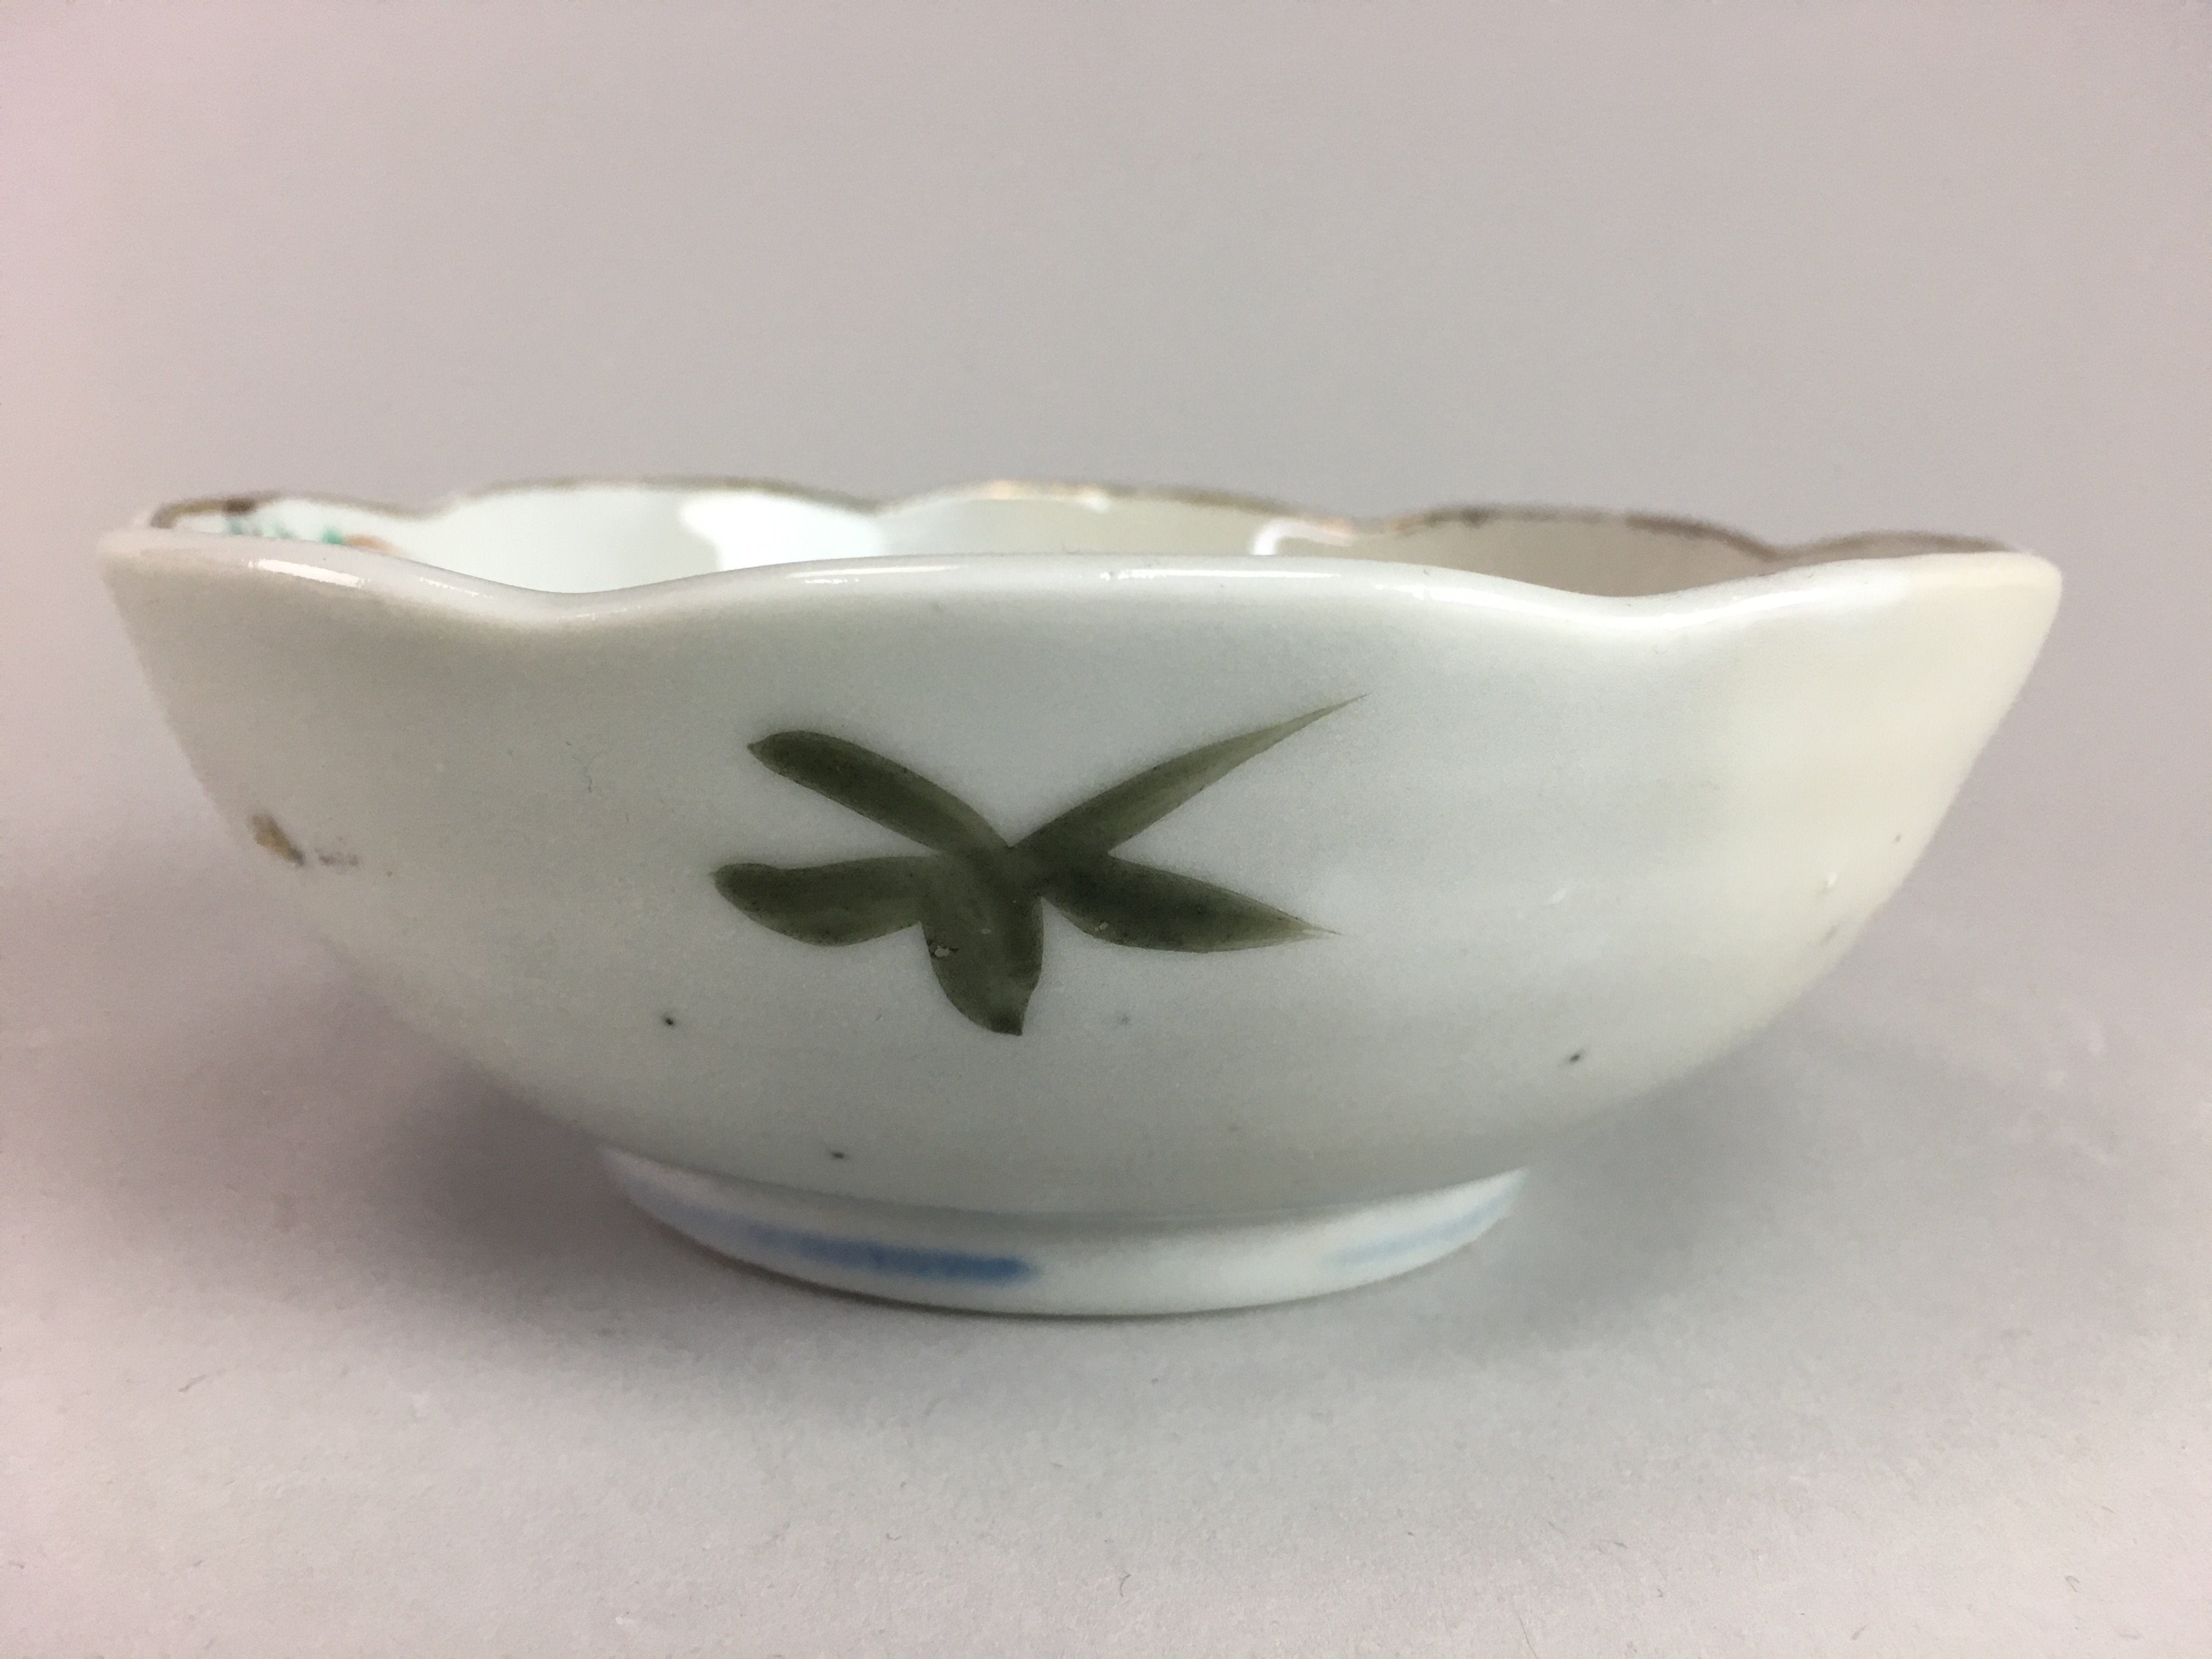 Japanese Porcelain Bowl Vtg Kobachi C1930 Floral Butterfly Design PT420